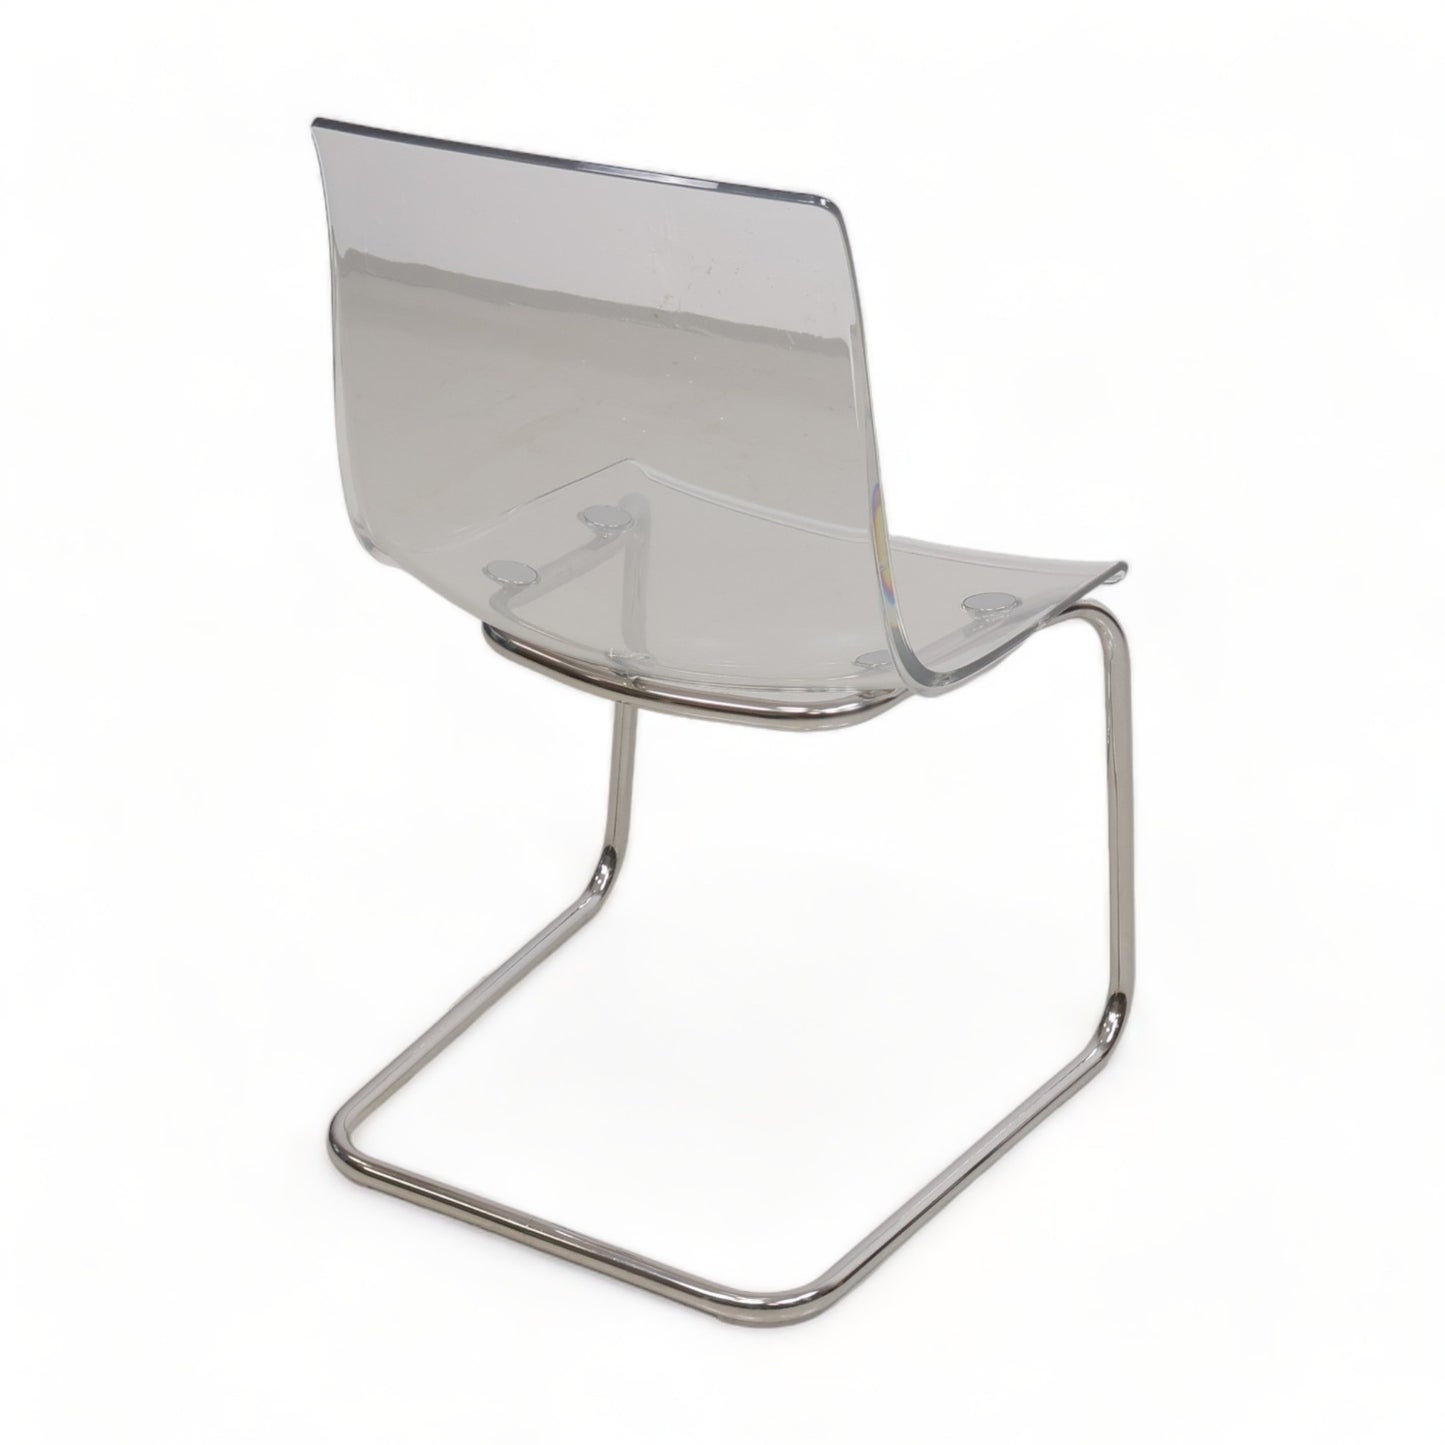 Pent brukt | IKEA Tobias transparent stol med fleksibel og forkrommet design